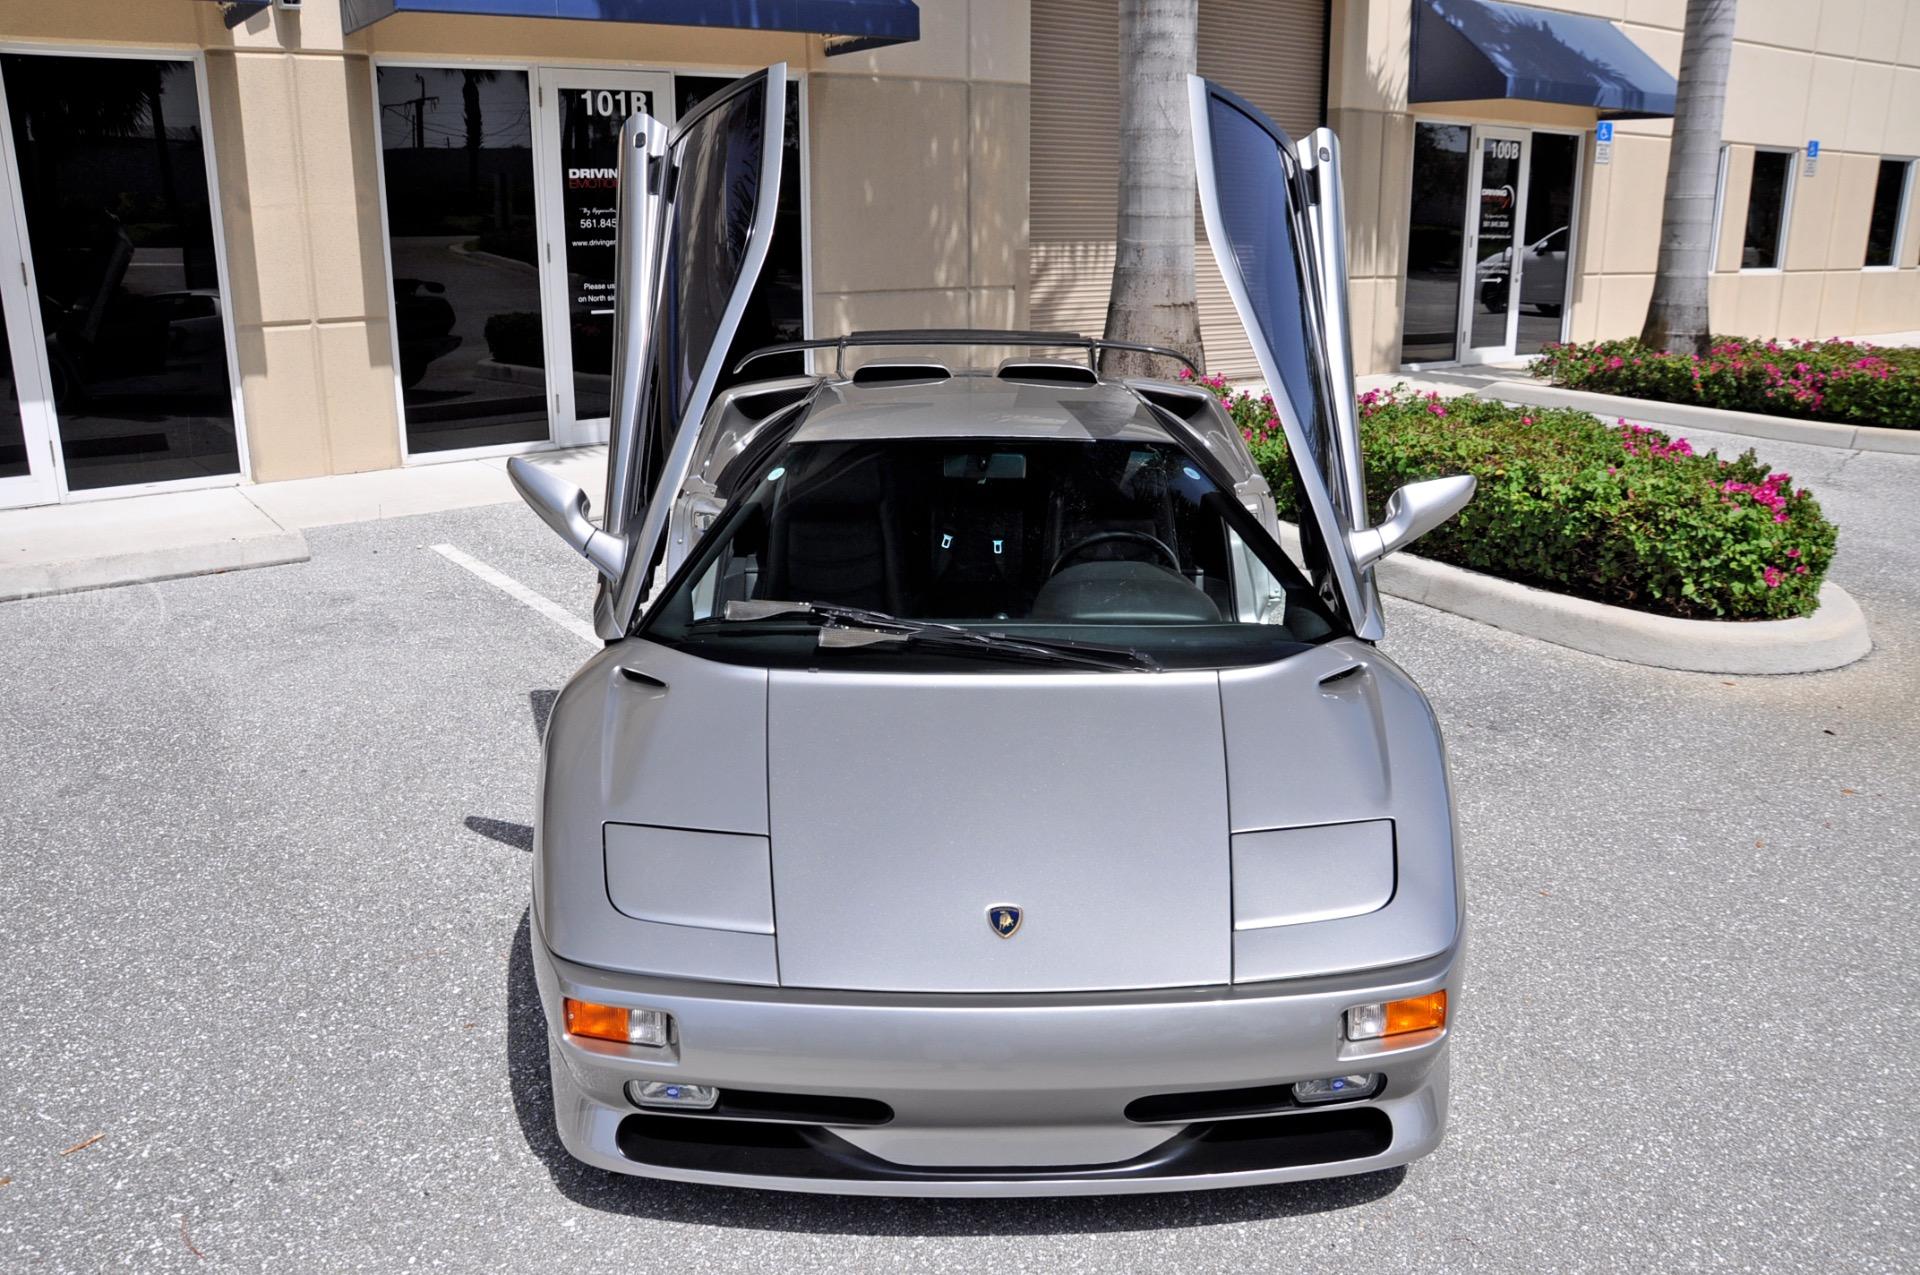 Used 1998 Lamborghini Diablo SV SV | Lake Park, FL